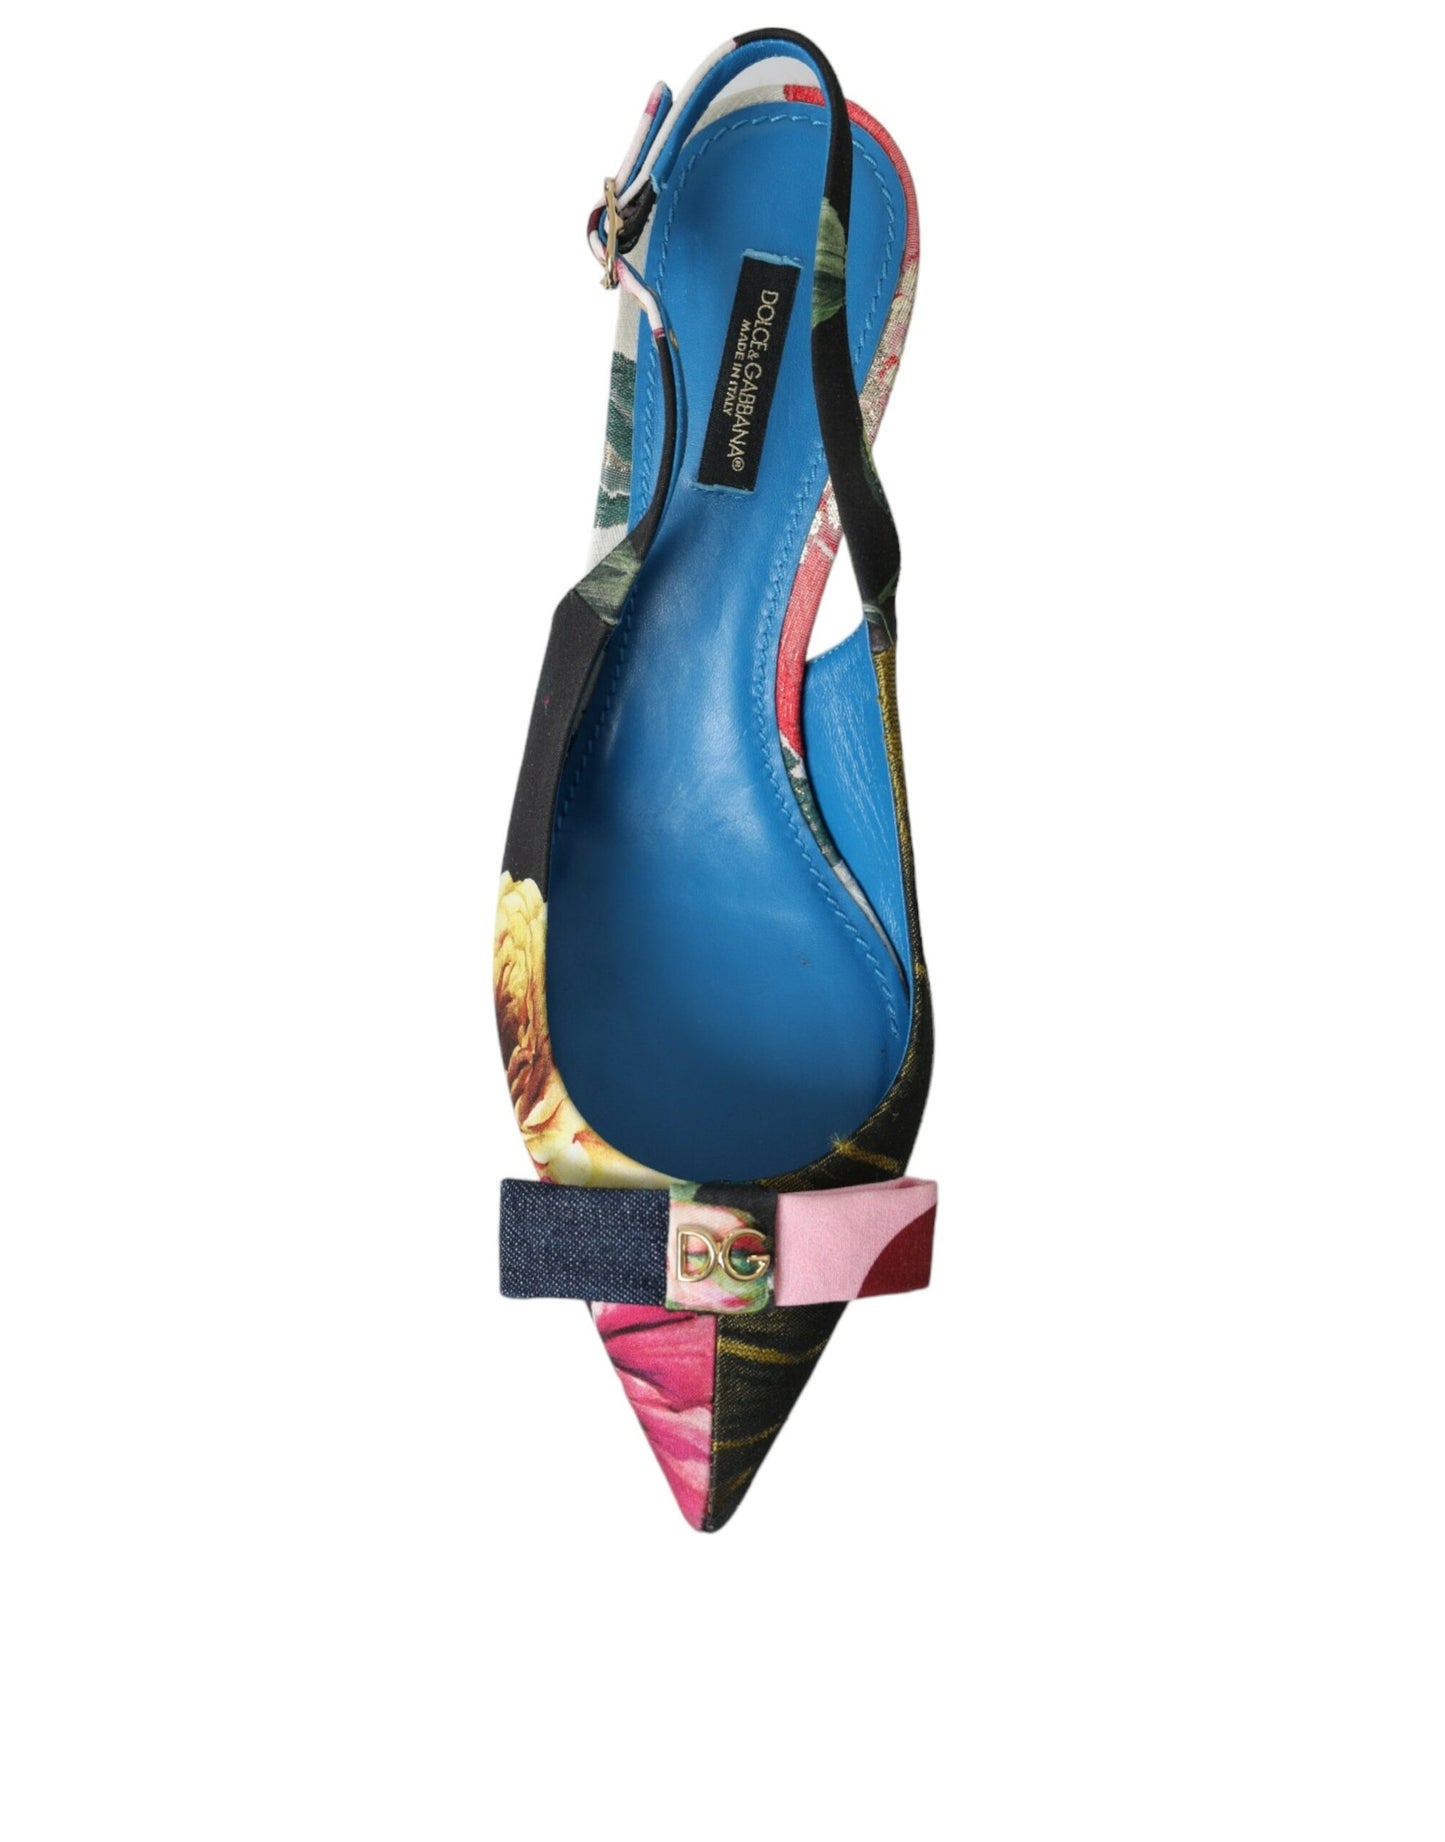 دولتشي آند غابانا أحذية خفيفة مرقعة بالزهور متعددة الألوان